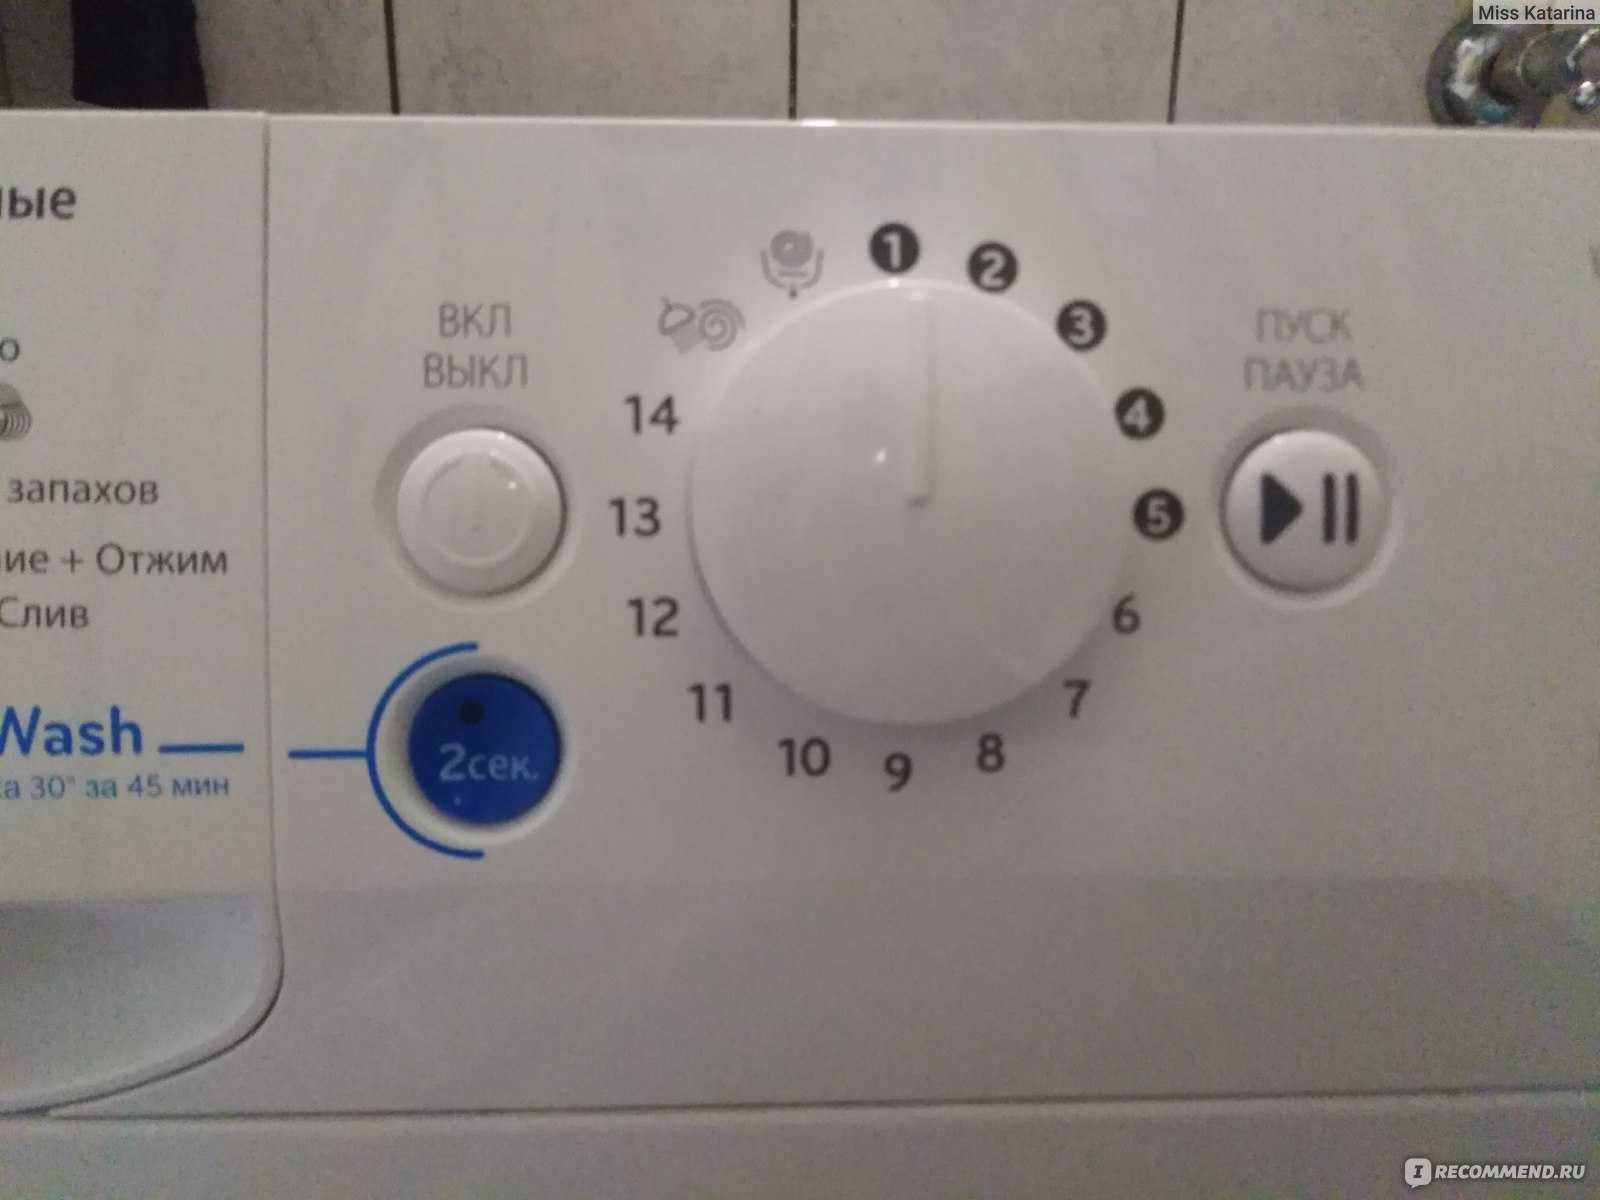 Почему возникает ошибка he1 в стиральной машине samsung и как ее исправить?